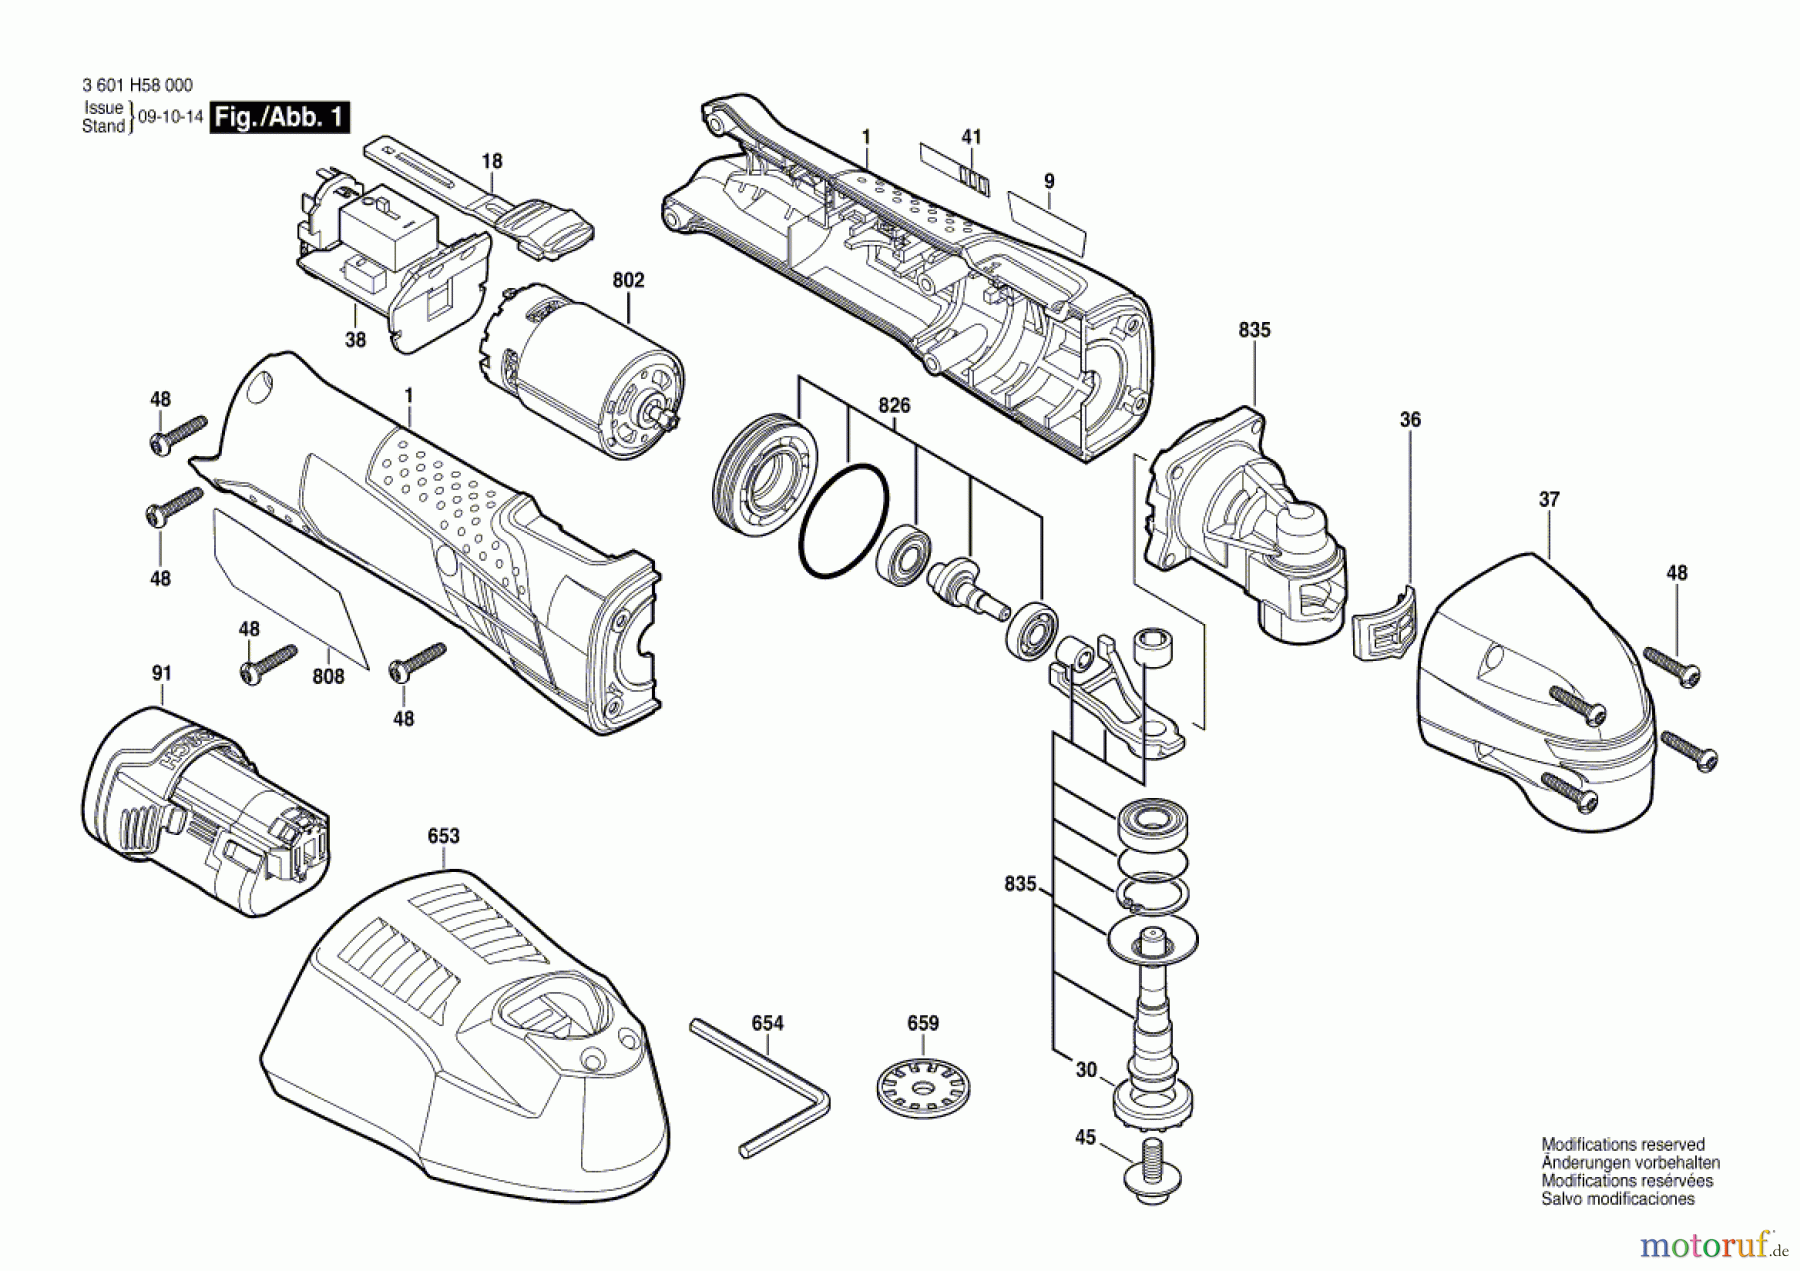  Bosch Werkzeug Multifunktionswerkzeug A-UM 10,8 V LI Seite 1